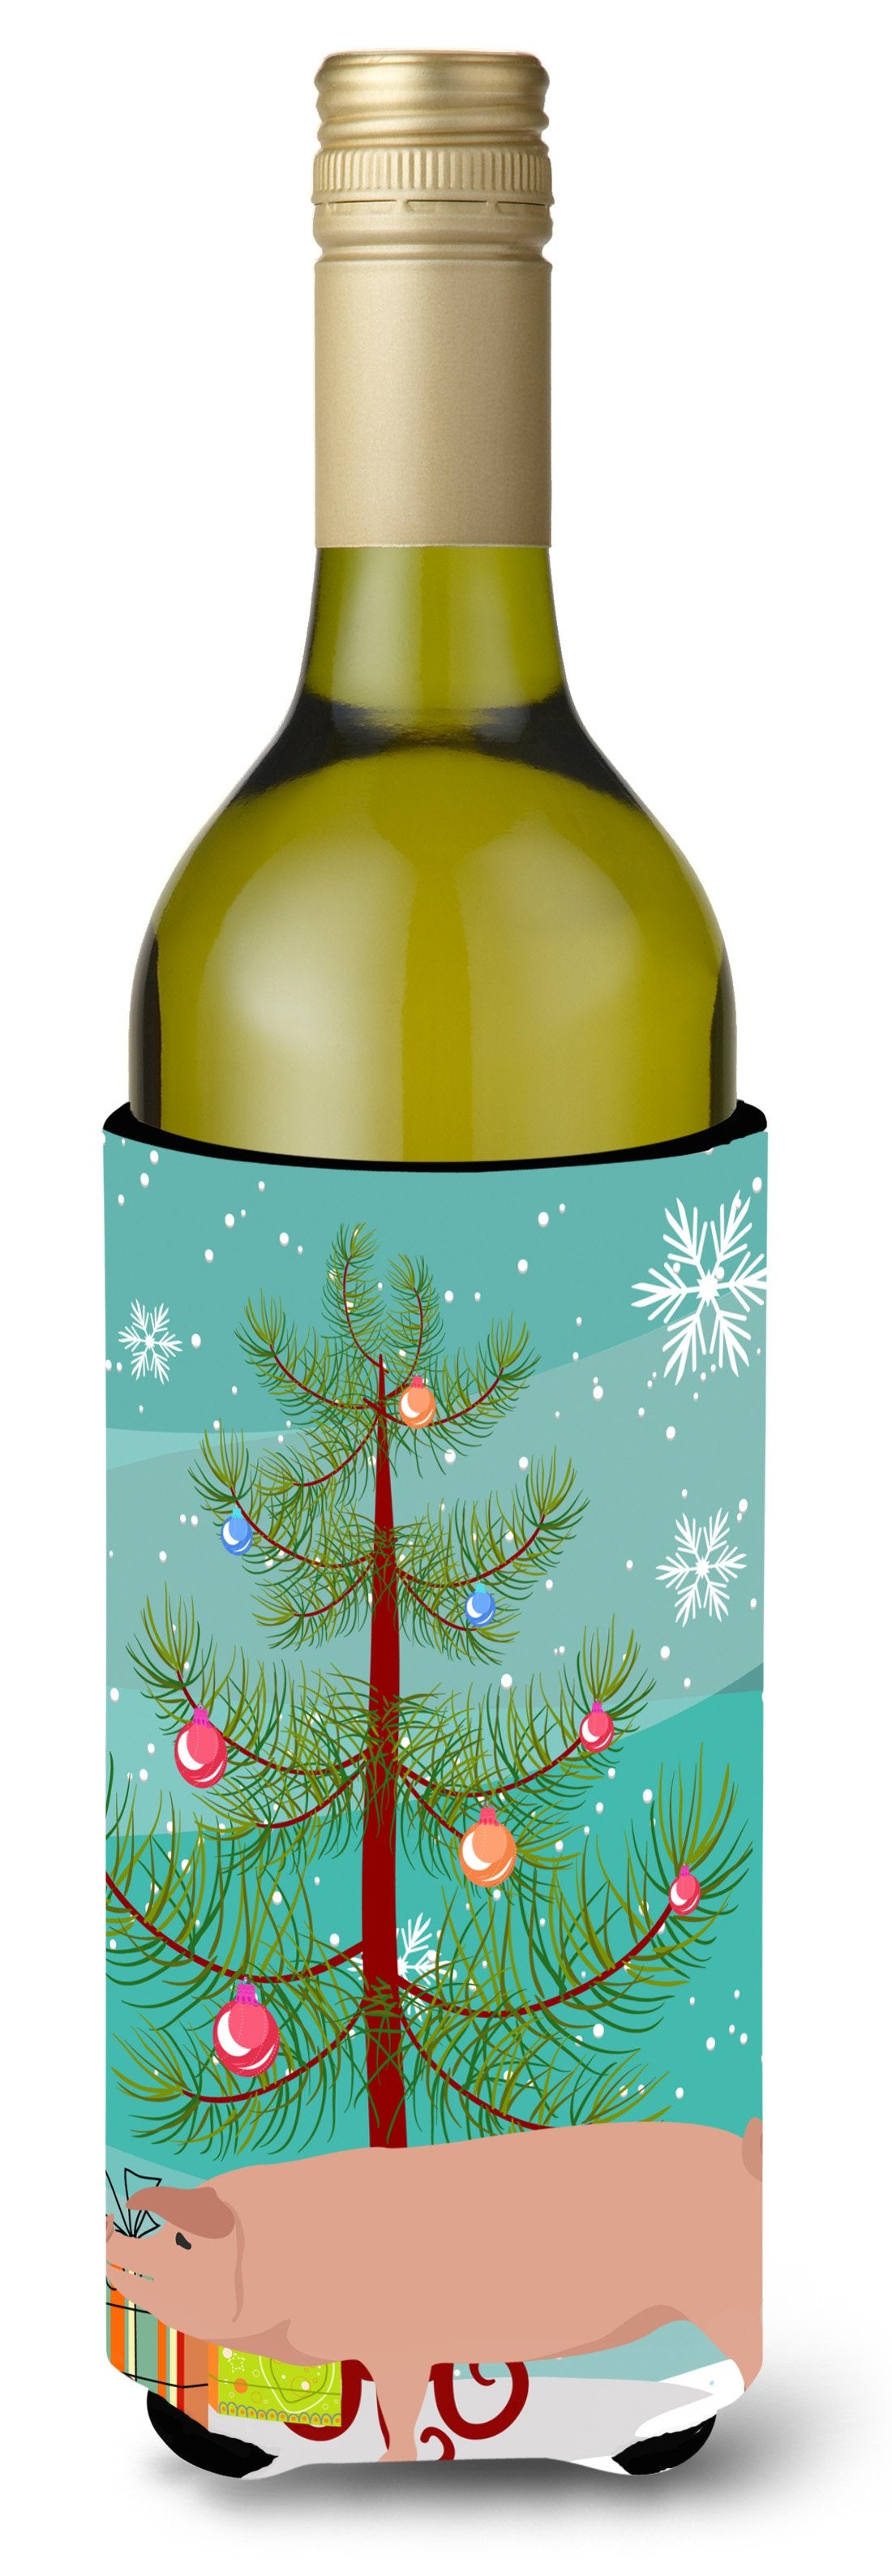 American Landrace Pig Christmas Wine Bottle Beverge Insulator Hugger BB9299LITERK by Caroline's Treasures